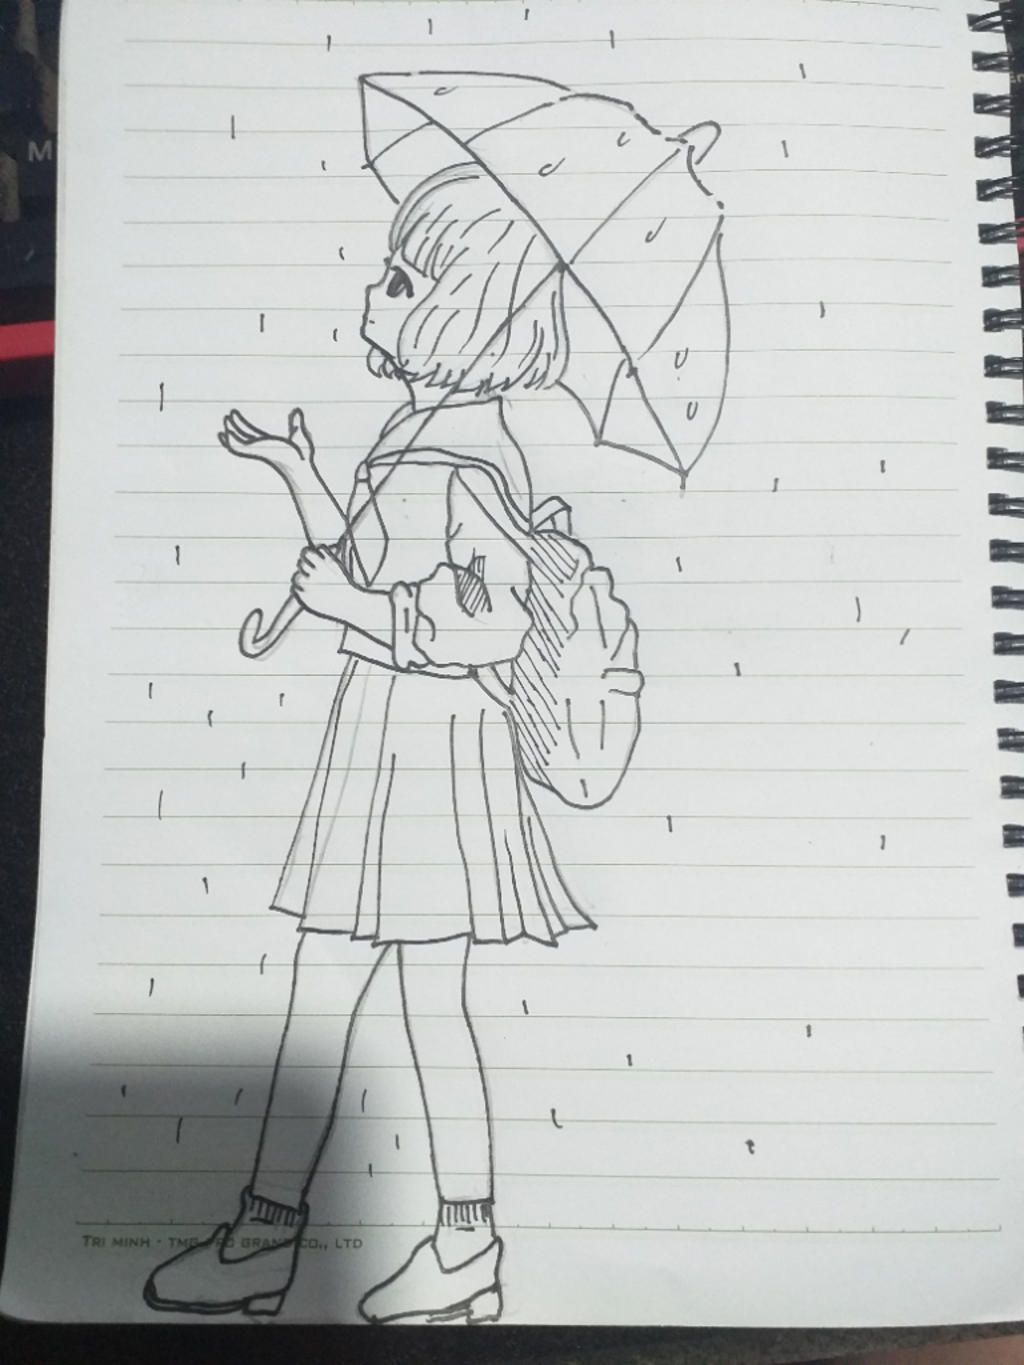 Vẽ một cô gái đang cầm ô đứng dưới mưa nhìn lên trời nha, tô màu ...